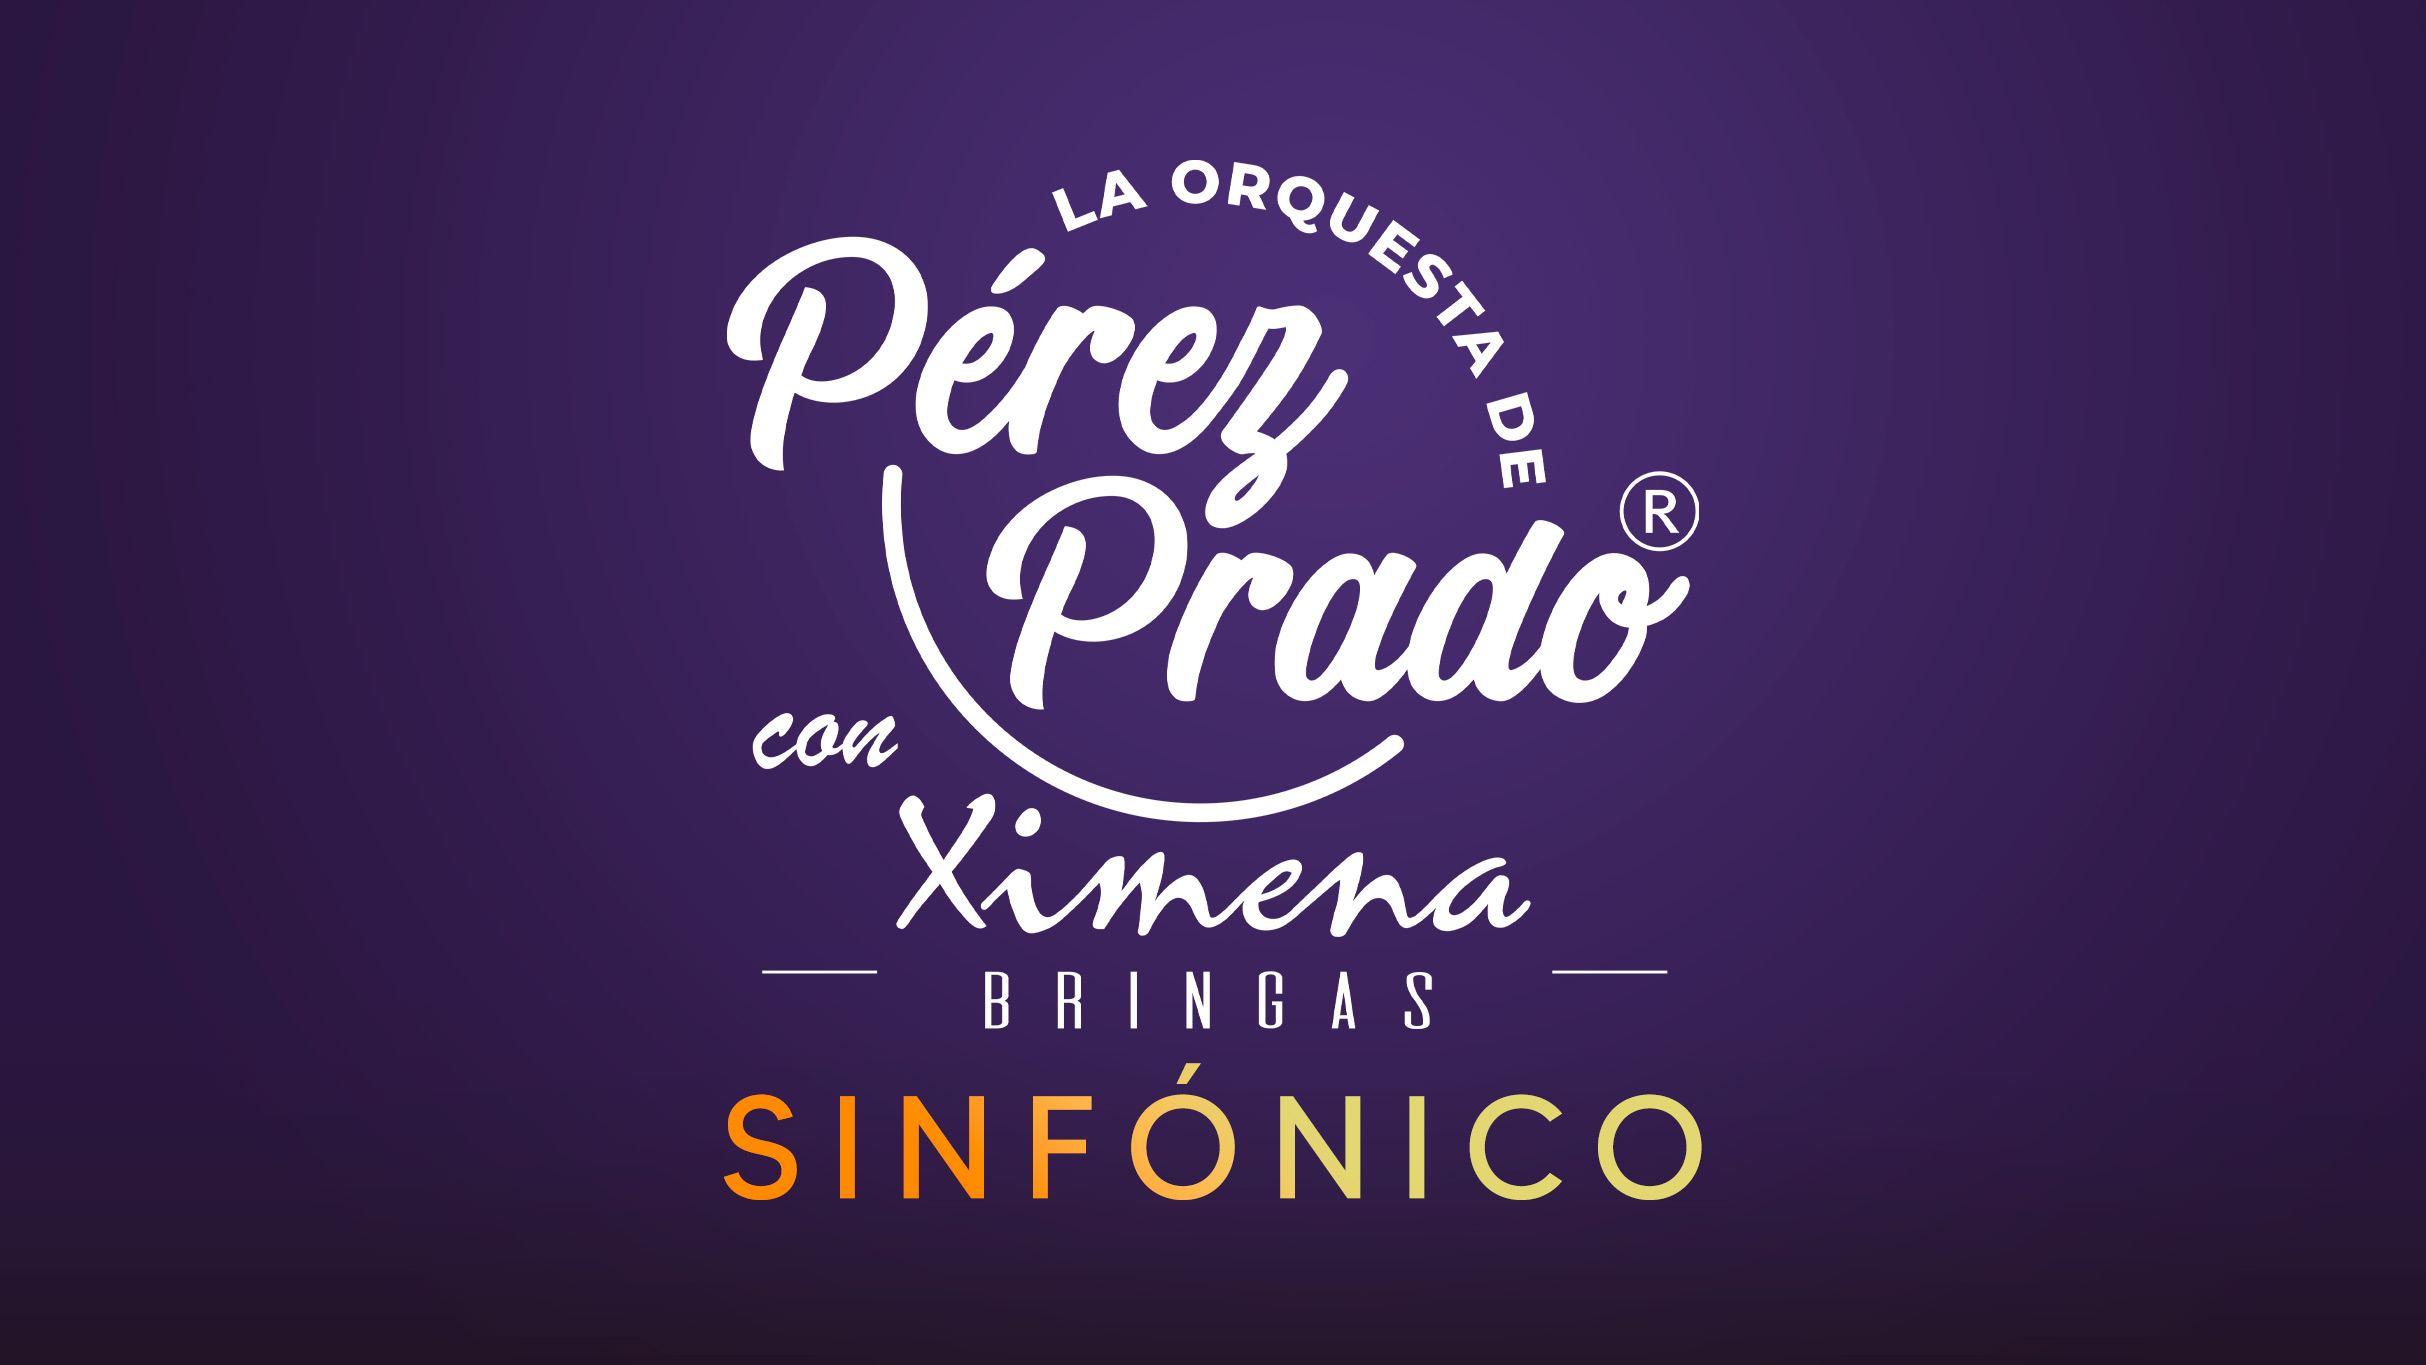 La Orquesta De Perez Prado Sinfonico